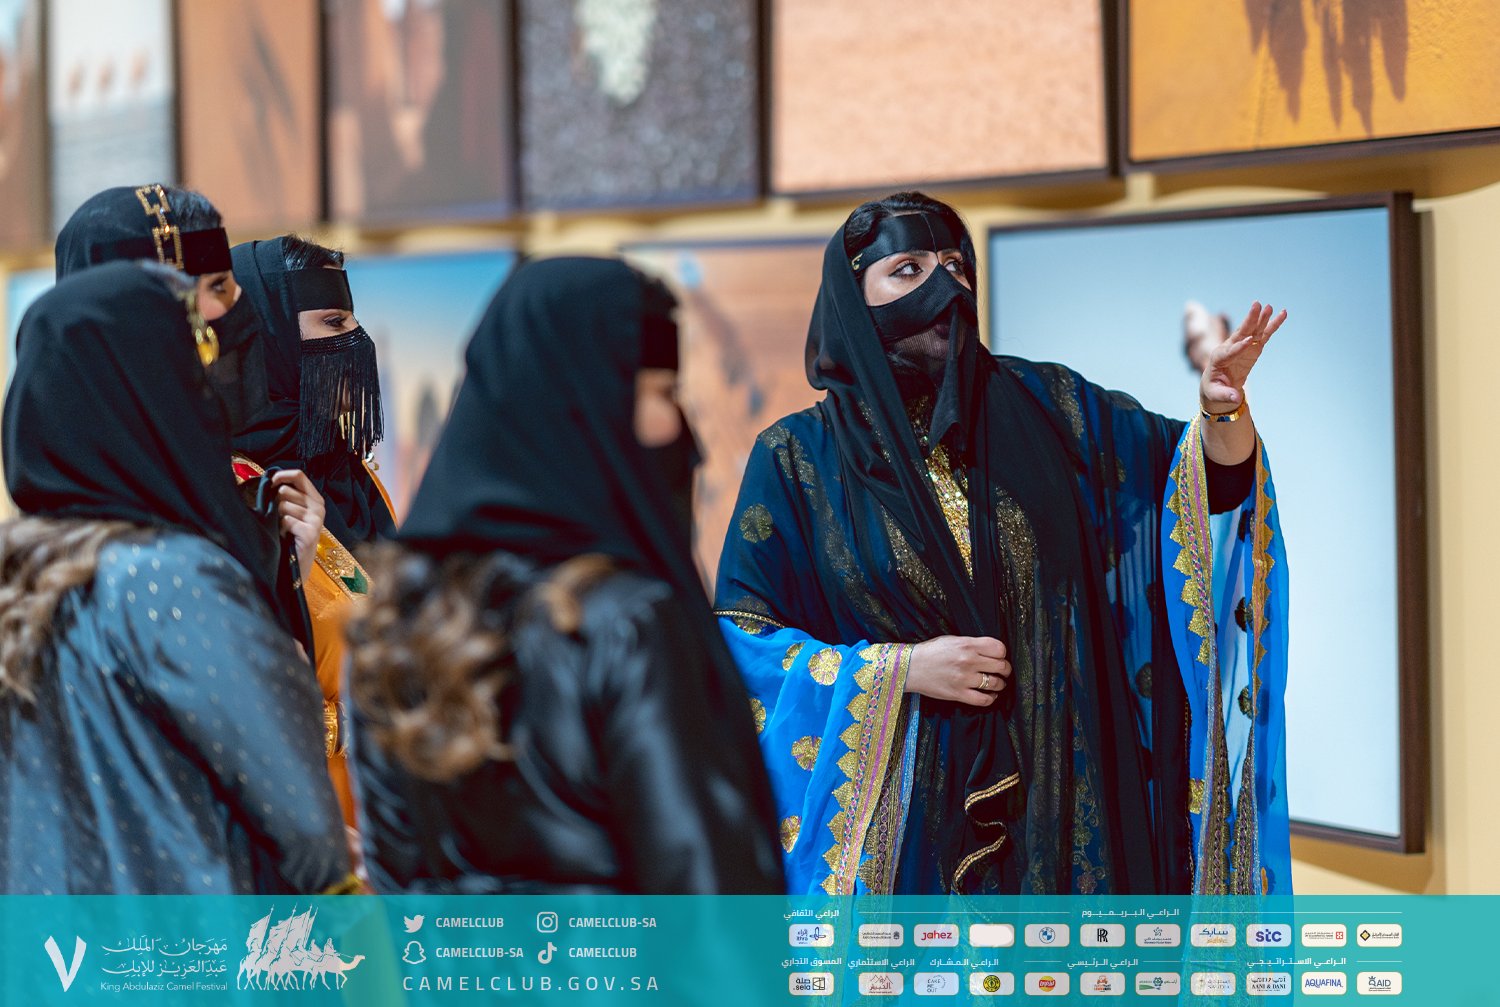 فارسات سعوديات بملابس مثيرة في مهرجان الملك عبدالعزيز للإبل